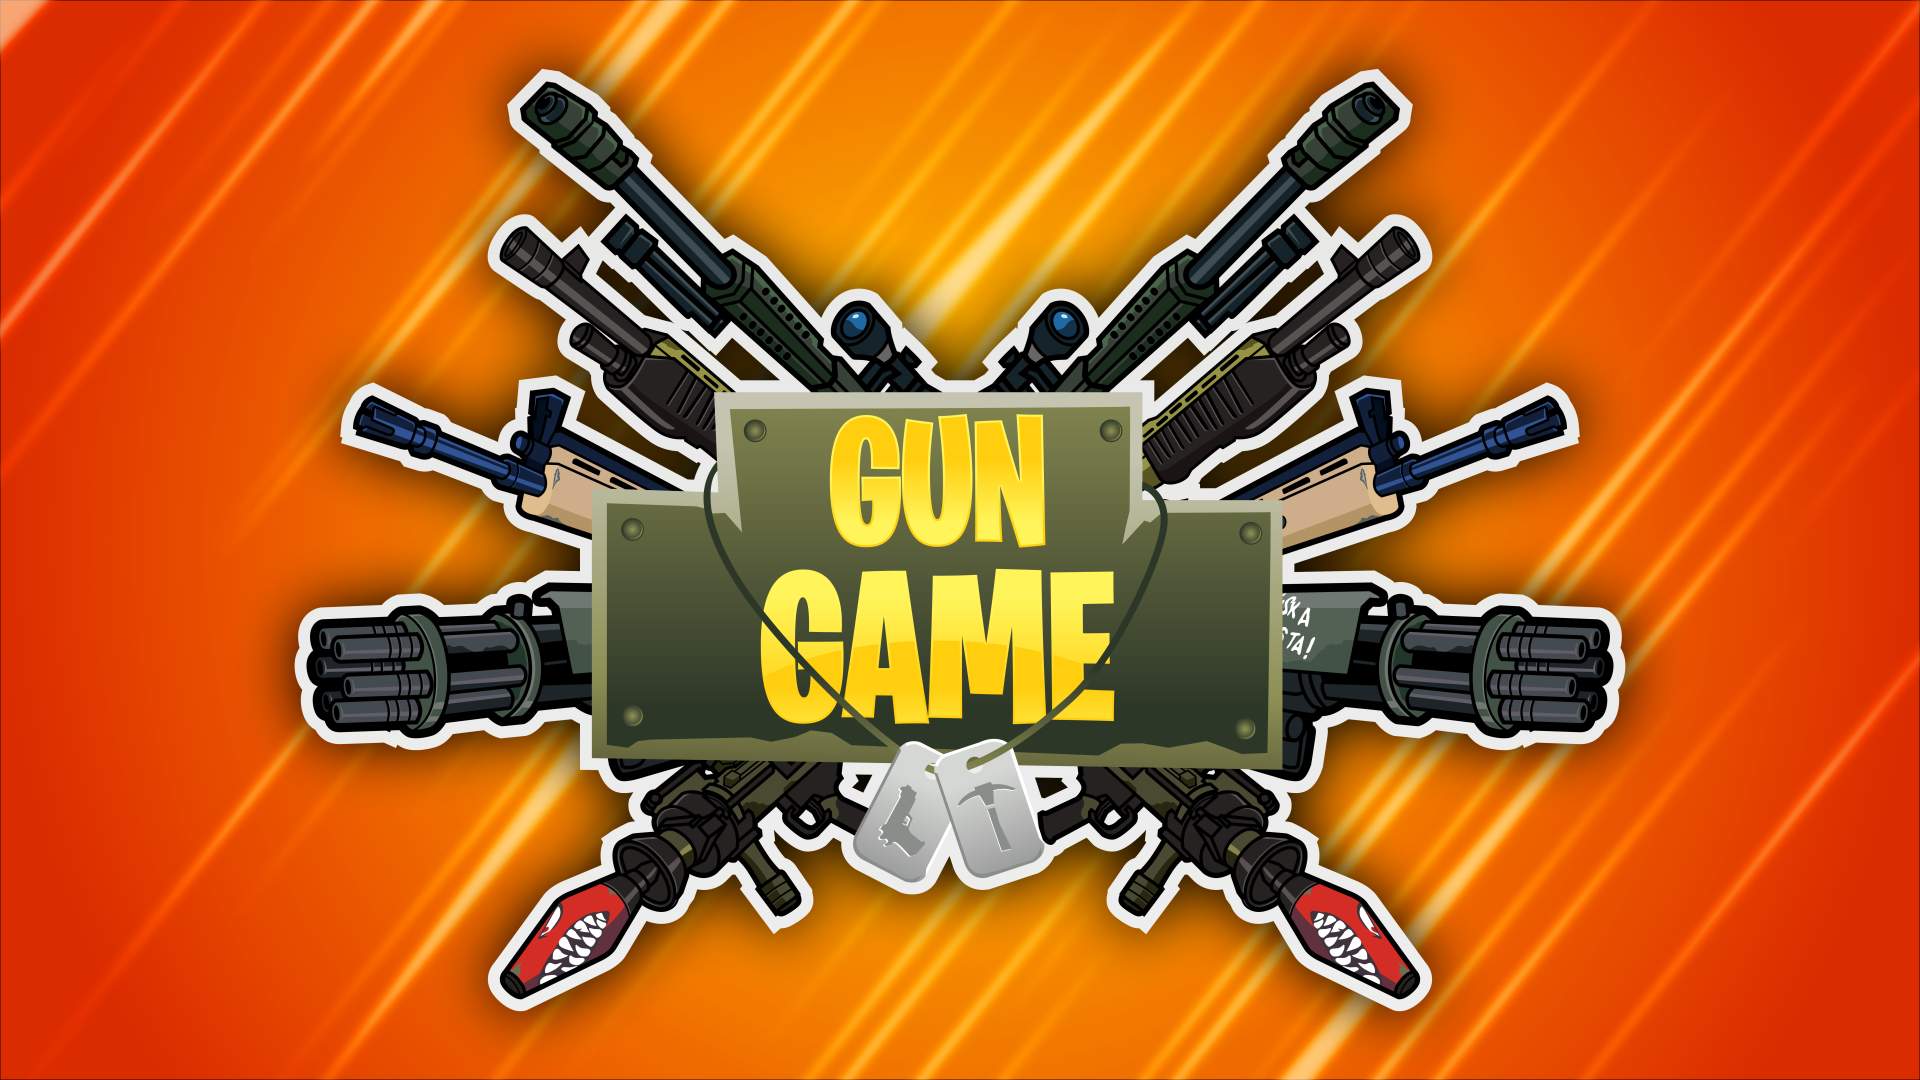 ULTIMATE GUN GAME